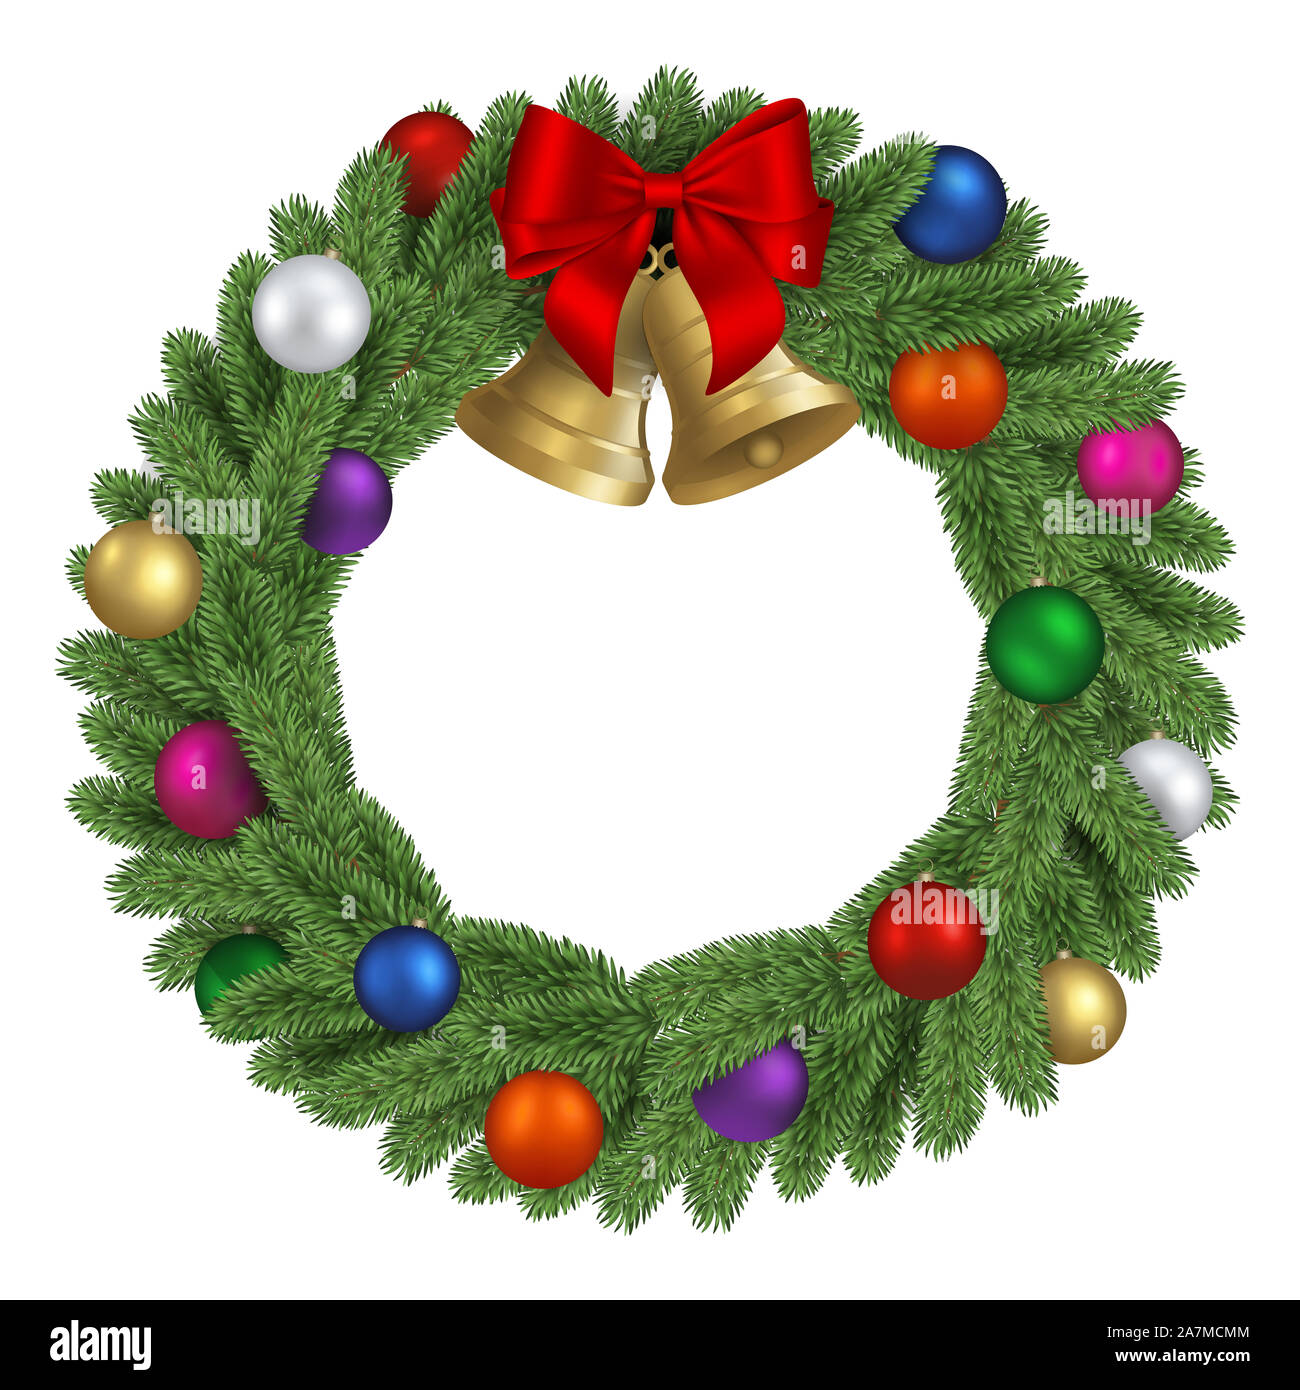 Weihnachten kiefer Kranz mit roter Schleife, bunte Kugeln und goldene  Glöckchen Stockfotografie - Alamy